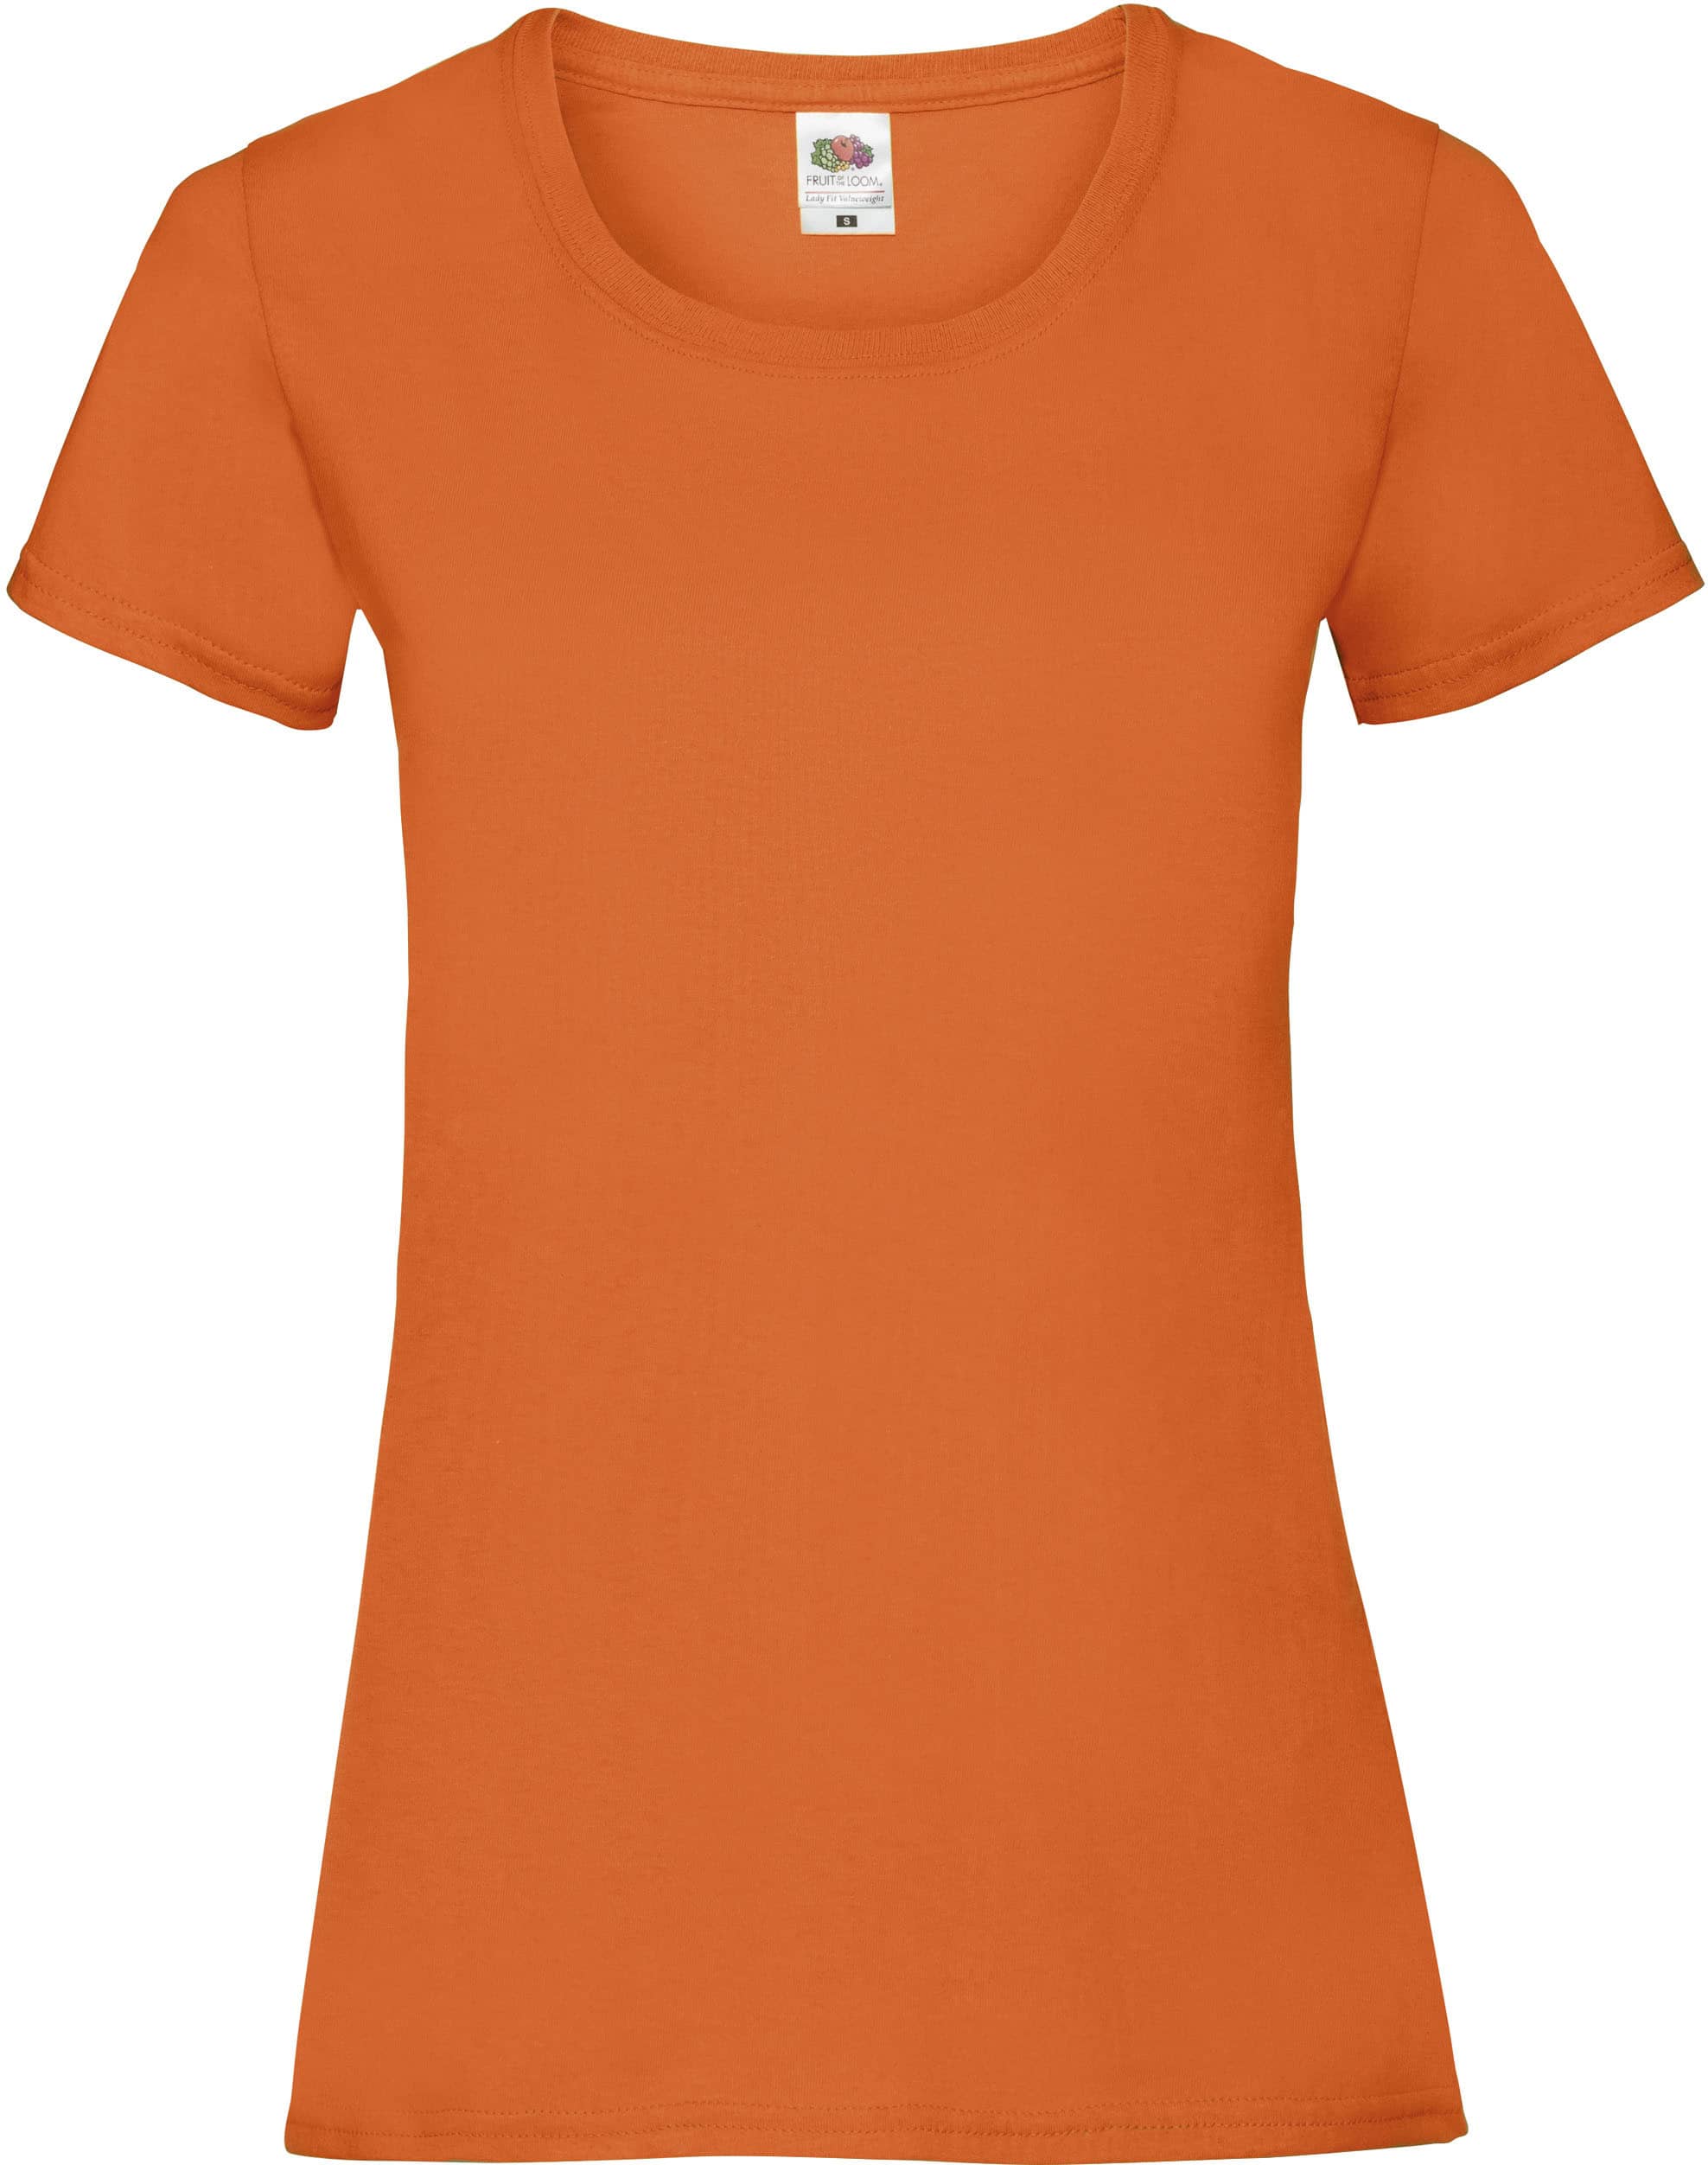 camiseta_personalizada_sc61372_naranja